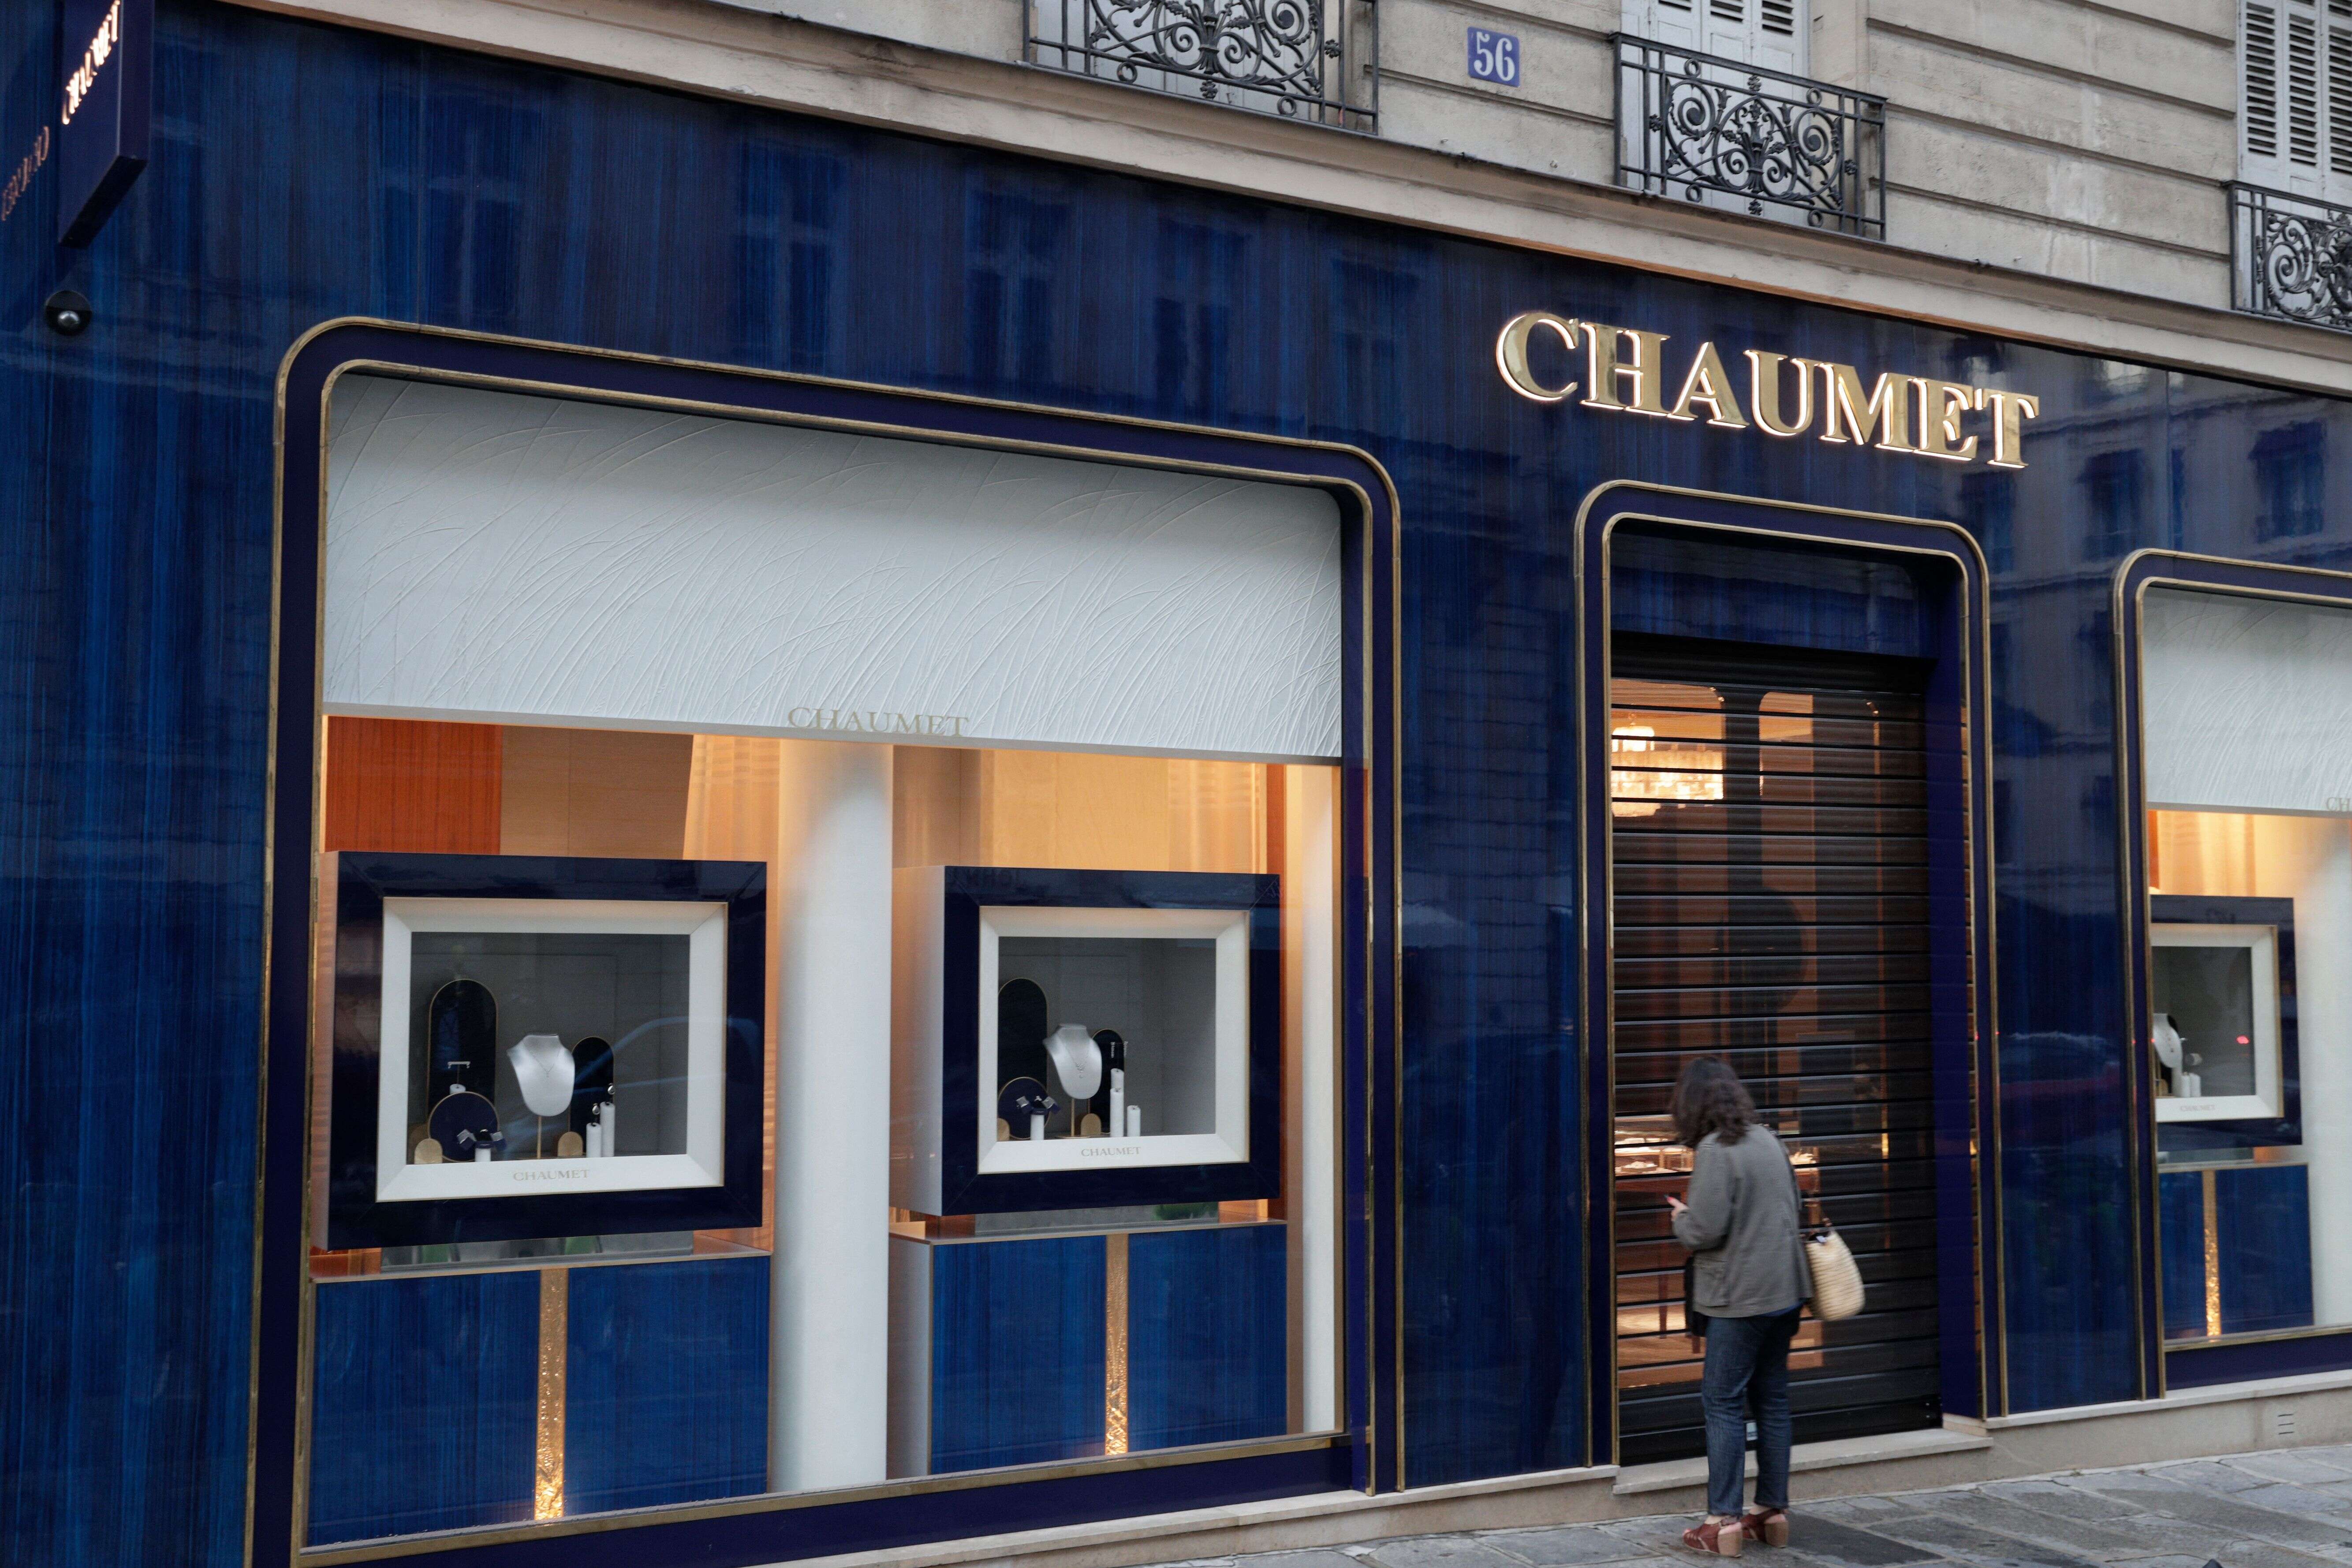 La bijouterie Chaumet de la rue François 1er, à Paris, a été braquée mardi 27 juillet. Le lendemain, deux suspects ont été interpellés sur une aire d'autoroute de Moselle, avec en leur possession une partie 